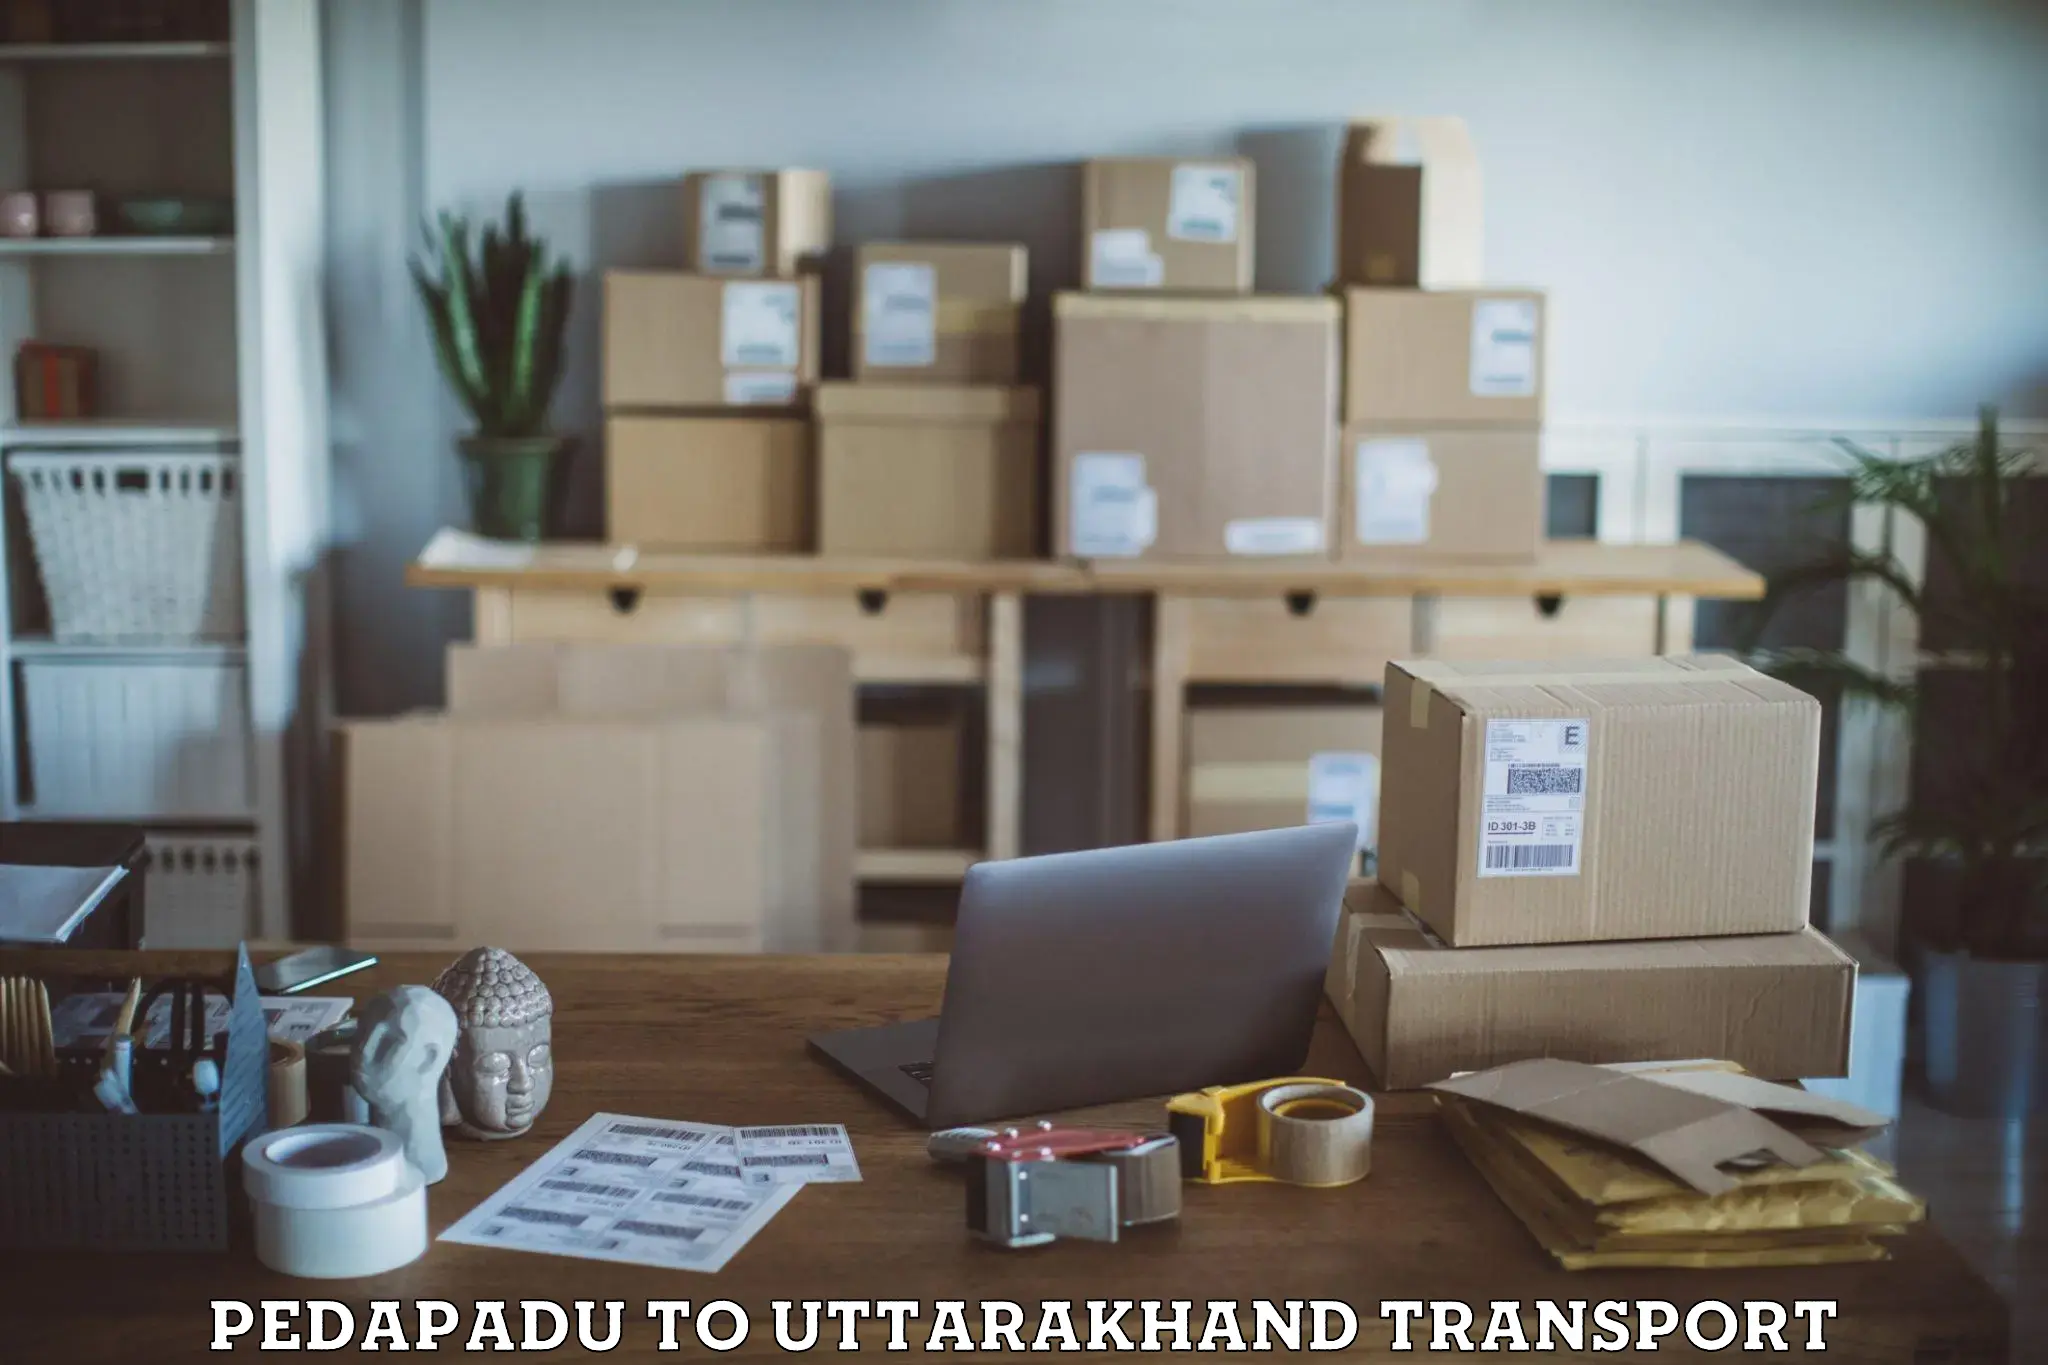 India truck logistics services Pedapadu to Nainital